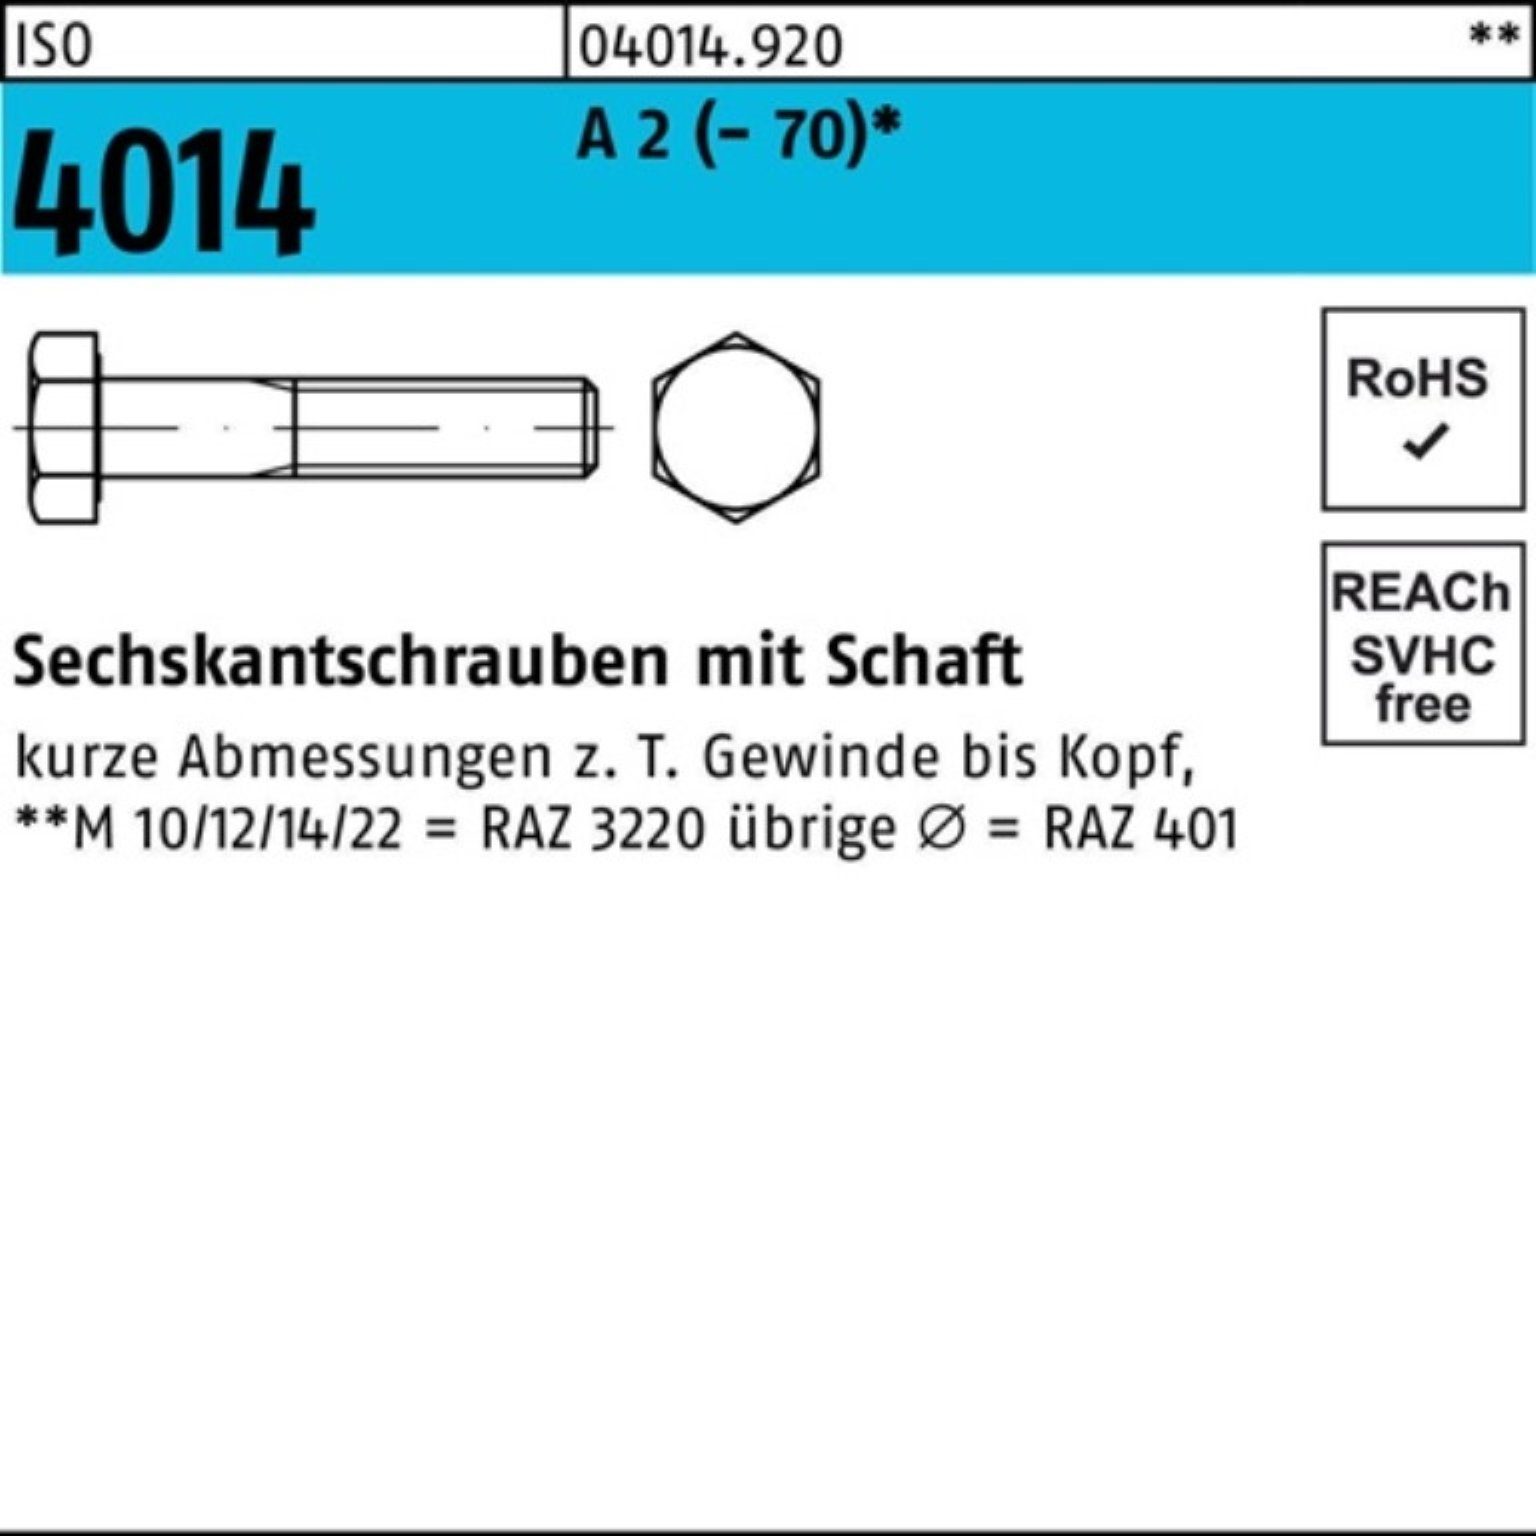 Bufab Sechskantschraube 100er Pack Sechskantschraube ISO 4014 Schaft M12x 150 A 2 (70) 1 St